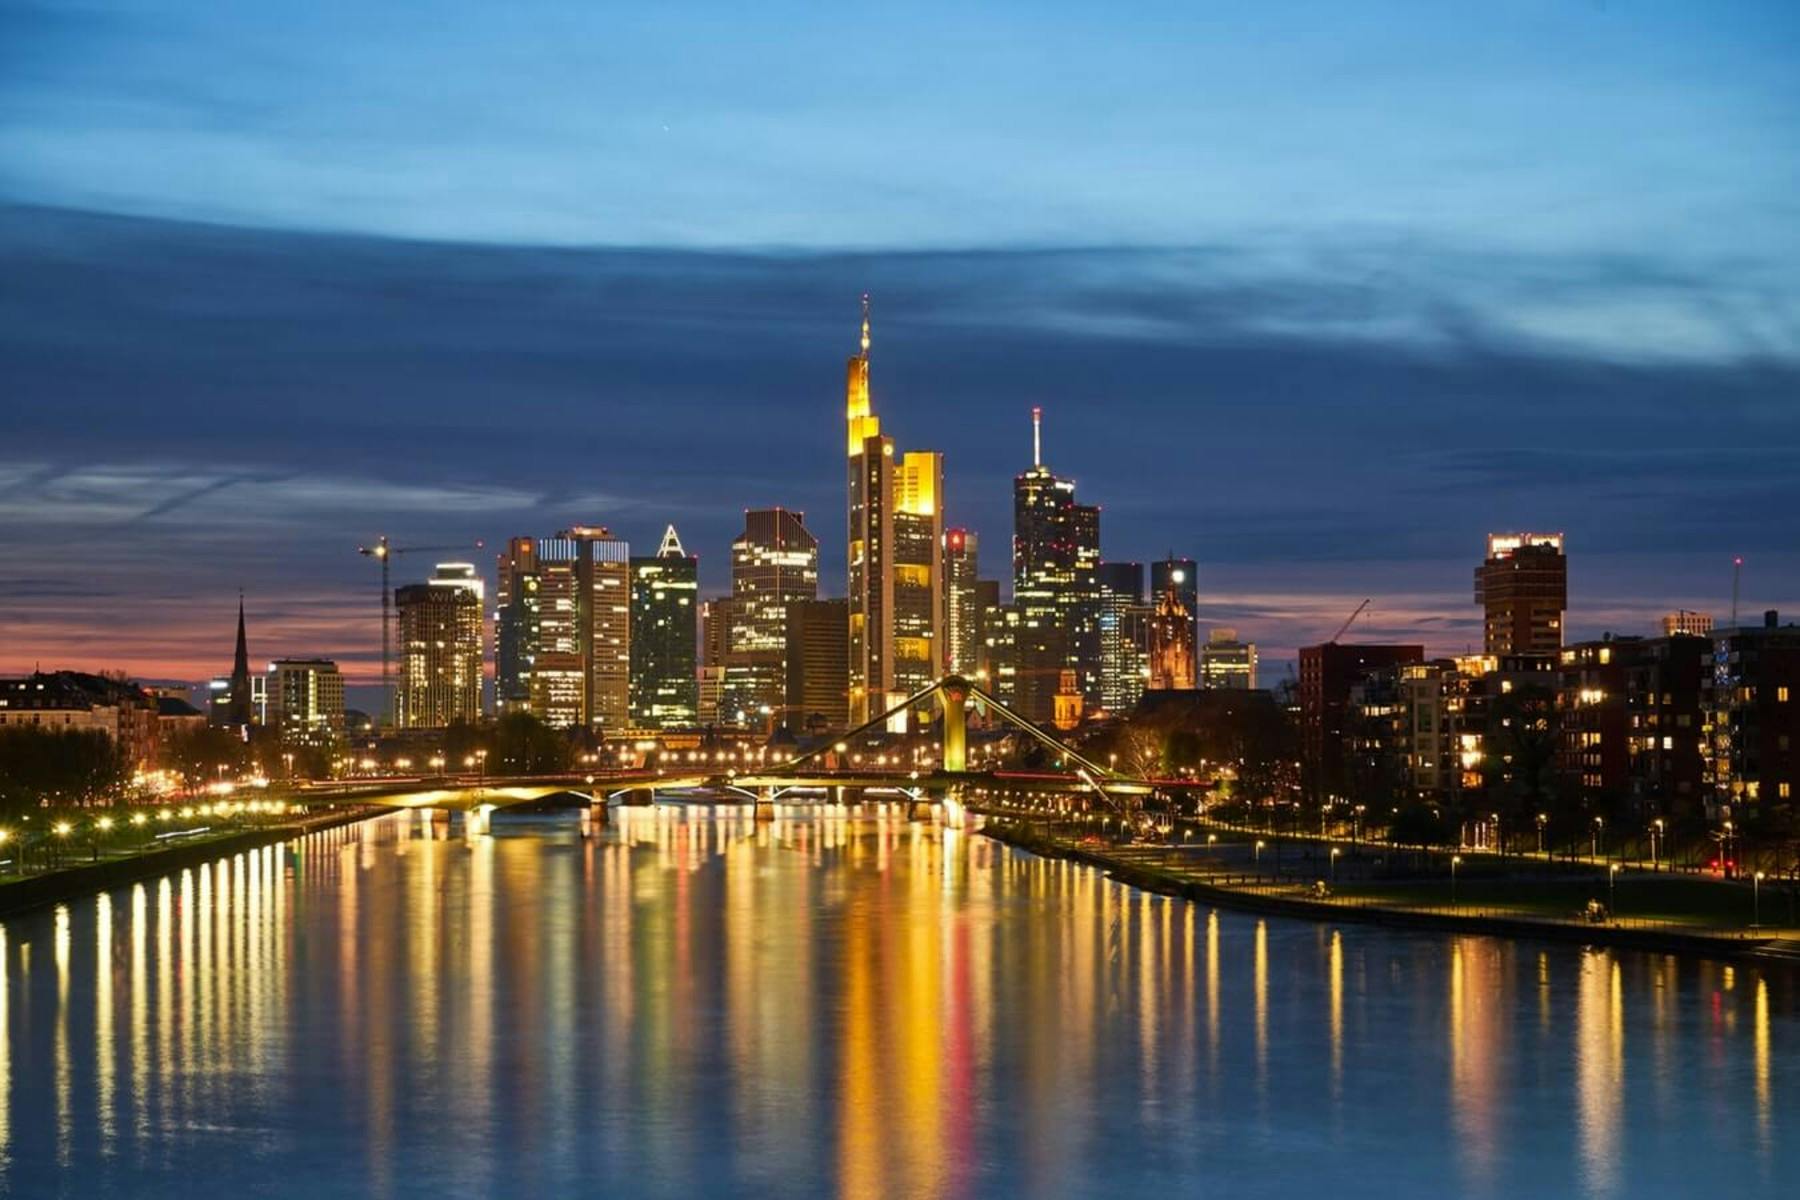 Sightseeings in Frankfurt: The Skyline of Frankfurt by night